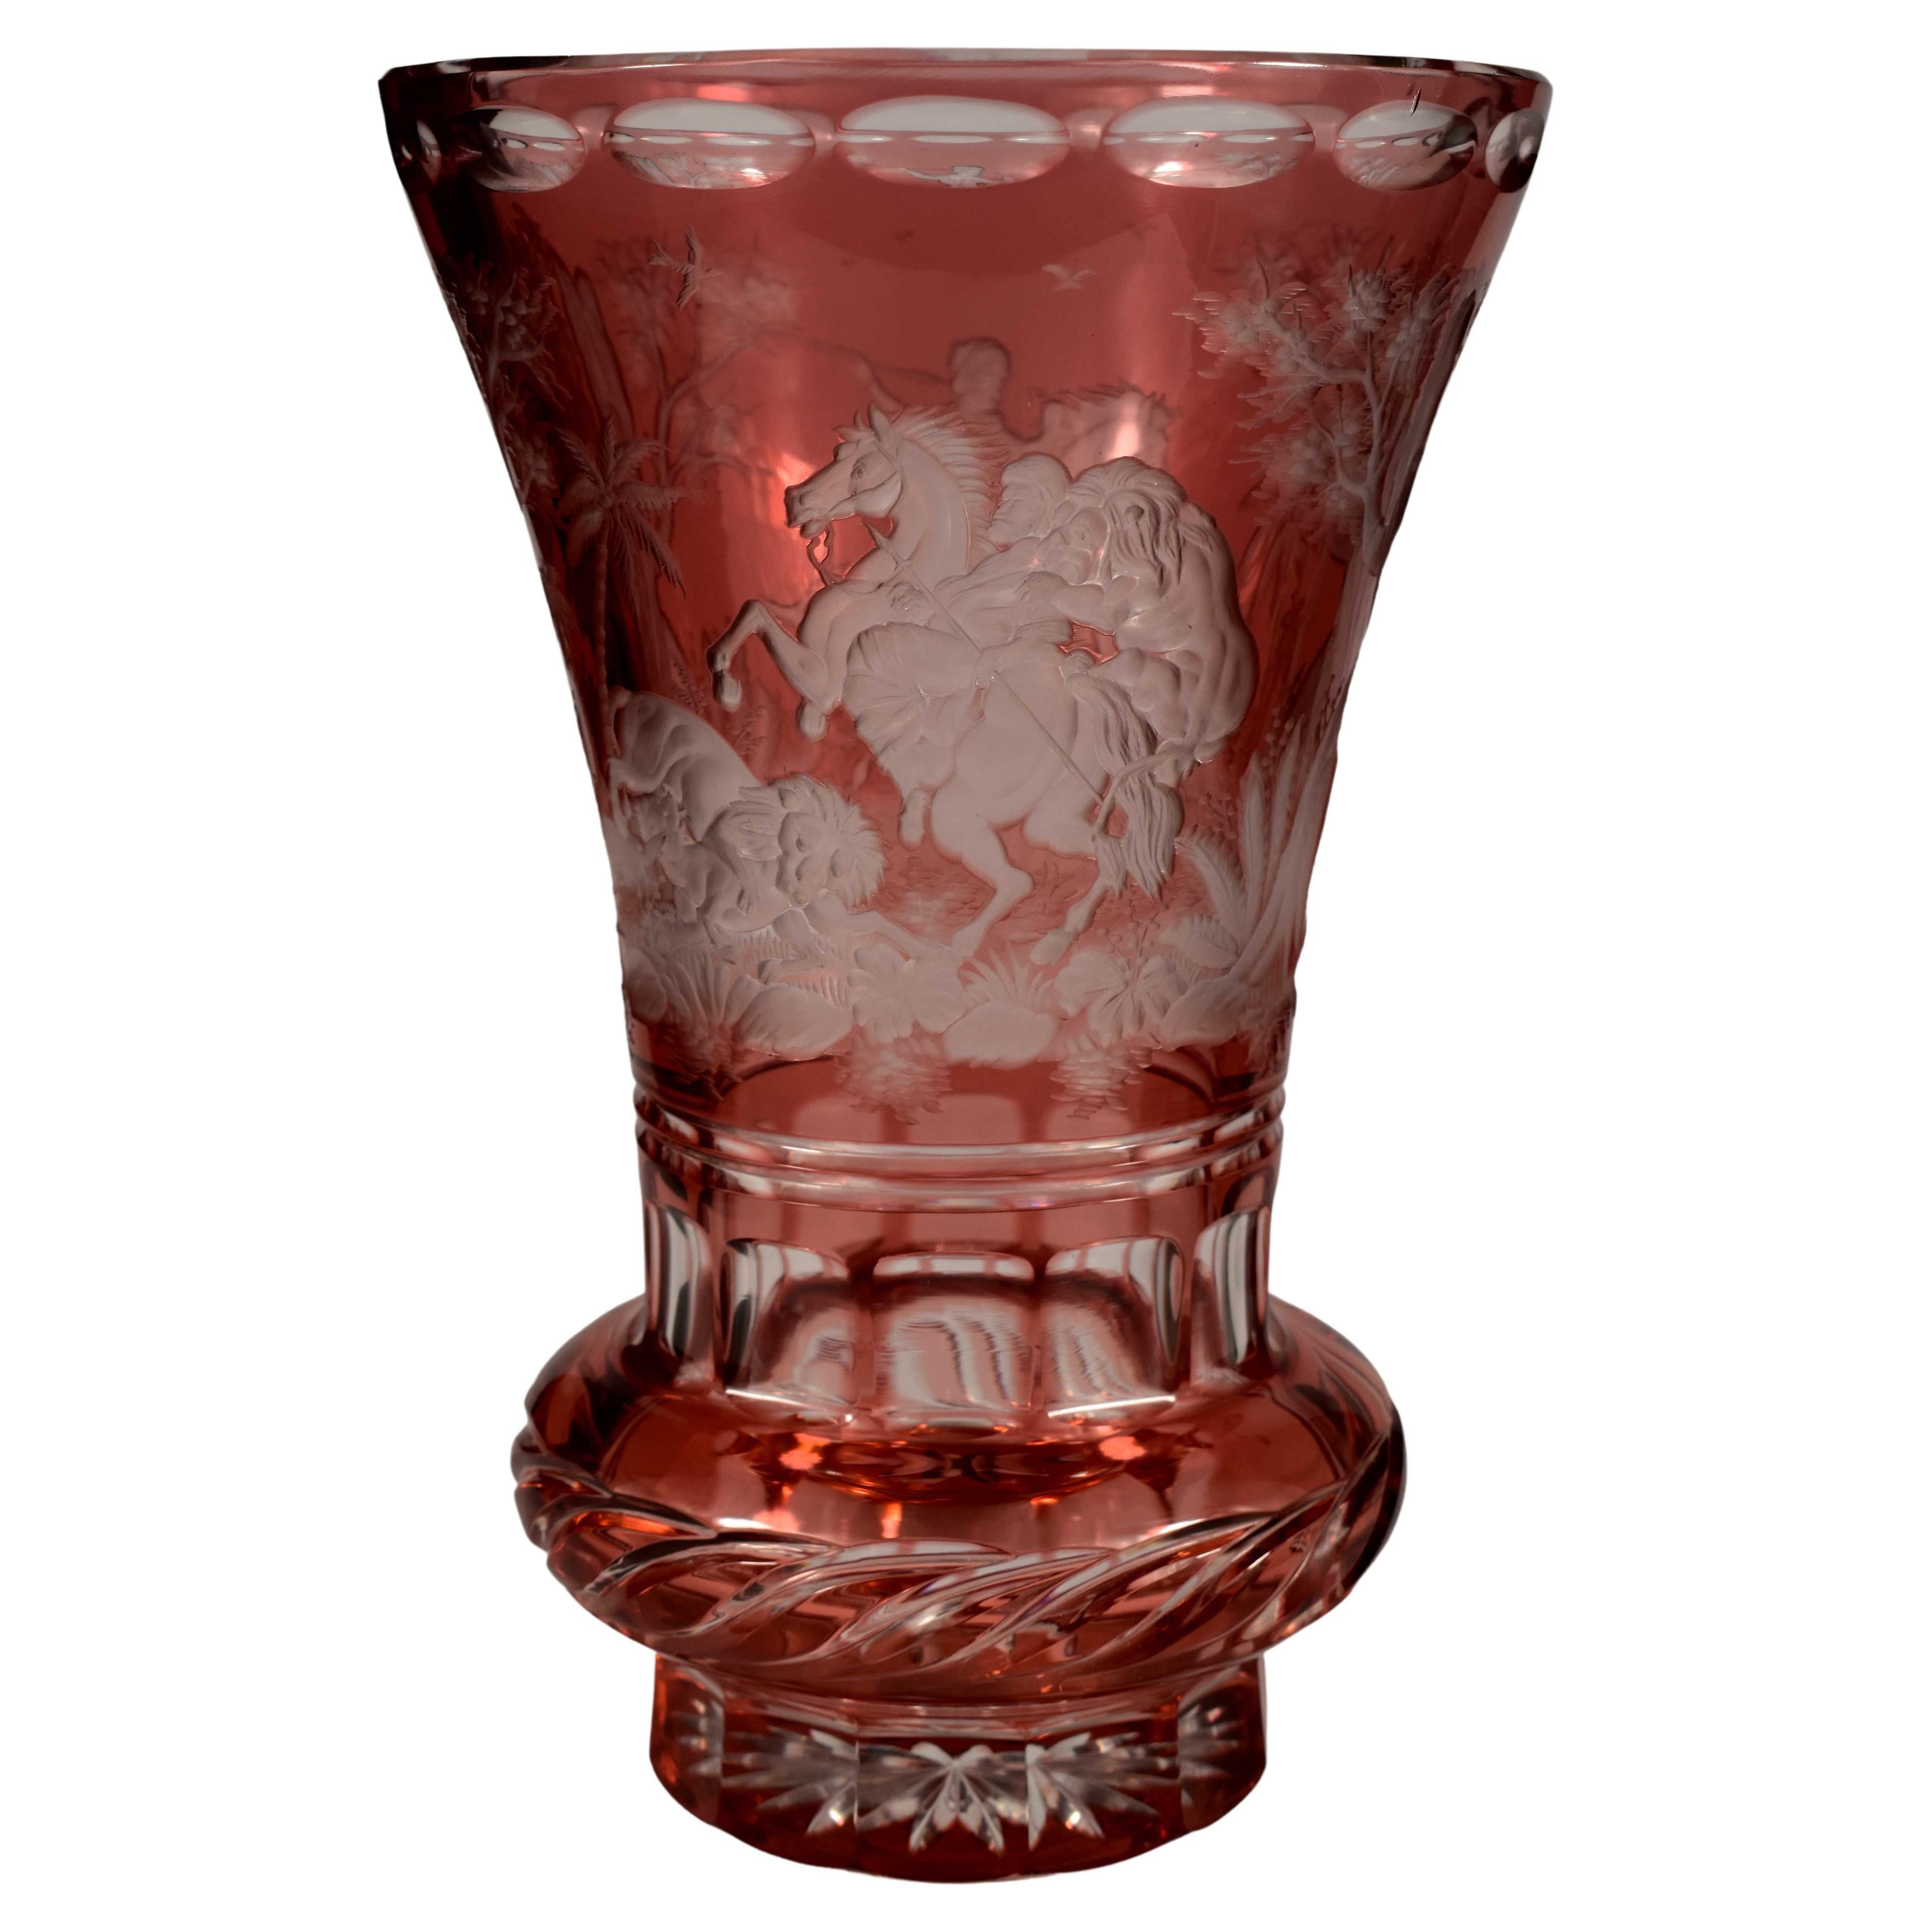 Vase mit Rubin-Overlay-Vase, graviert, Löwe auf der Jagd, 20. Jahrhundert, böhmisches Glas